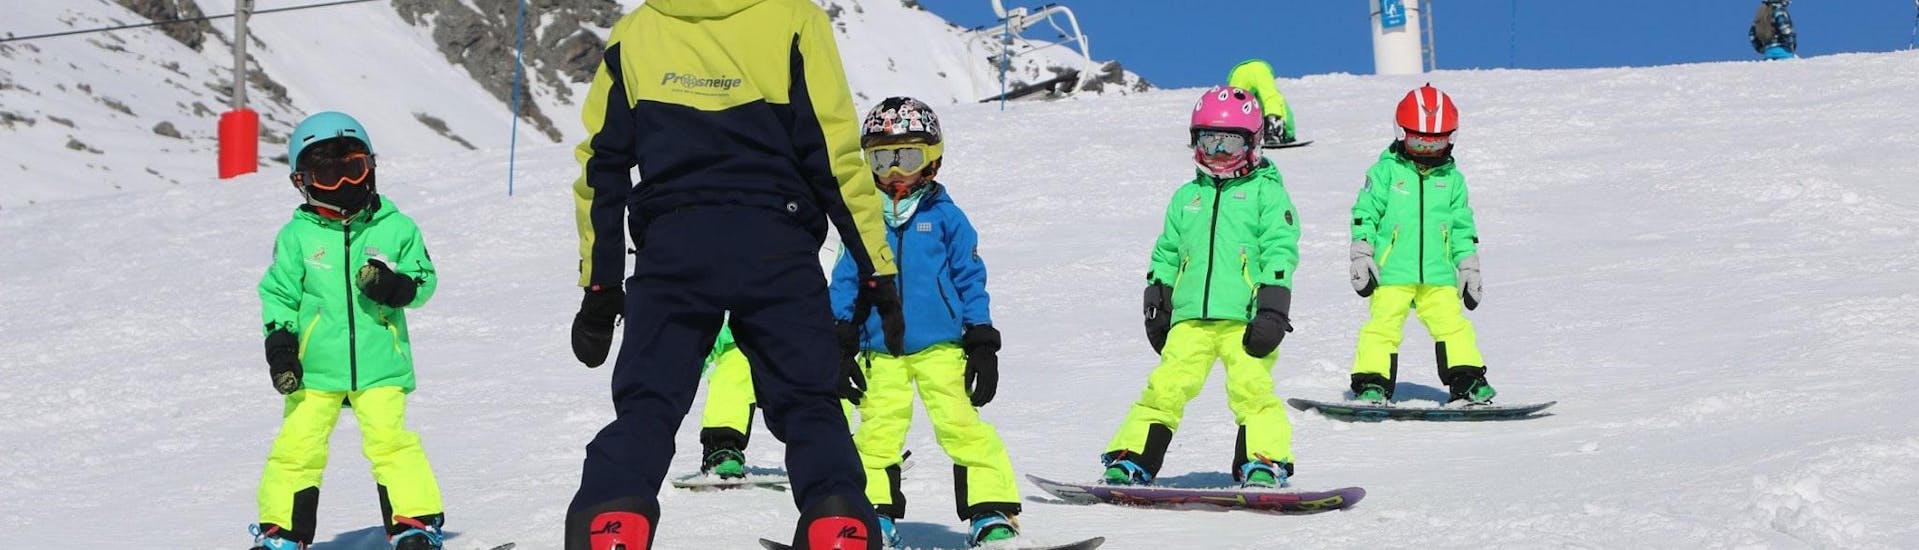 Un maestro della scuola Prosneige Méribel insegna ai bambini sorridenti durante le lezioni di snowboard per bambini di tutte le età e di tutti i livelli.